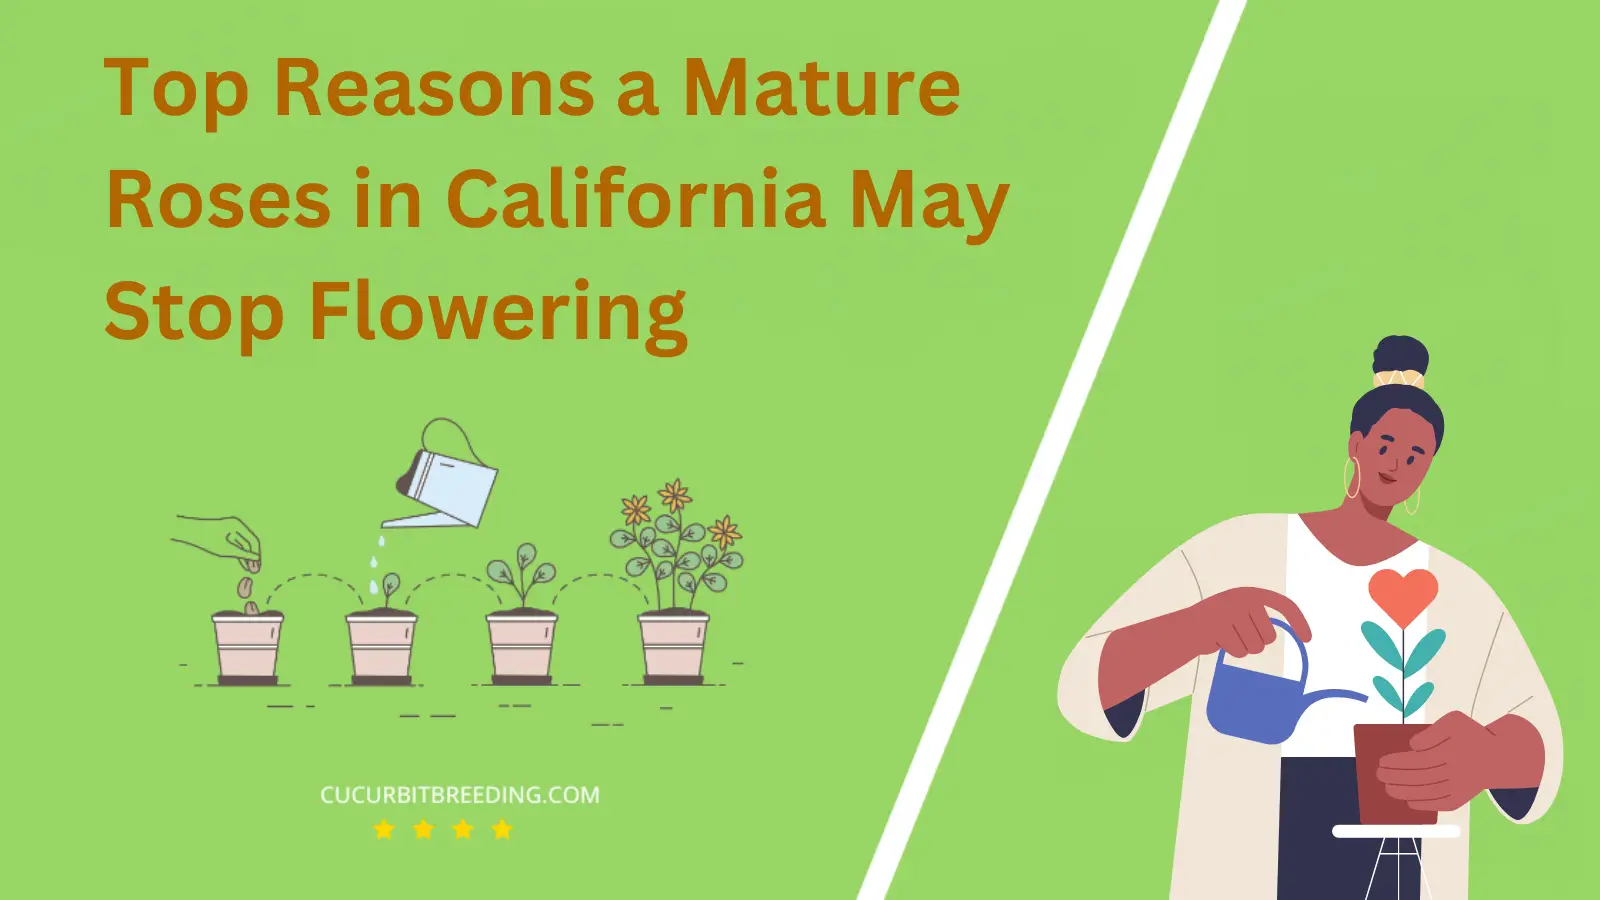 Top Reasons a Mature Roses in California May Stop Flowering